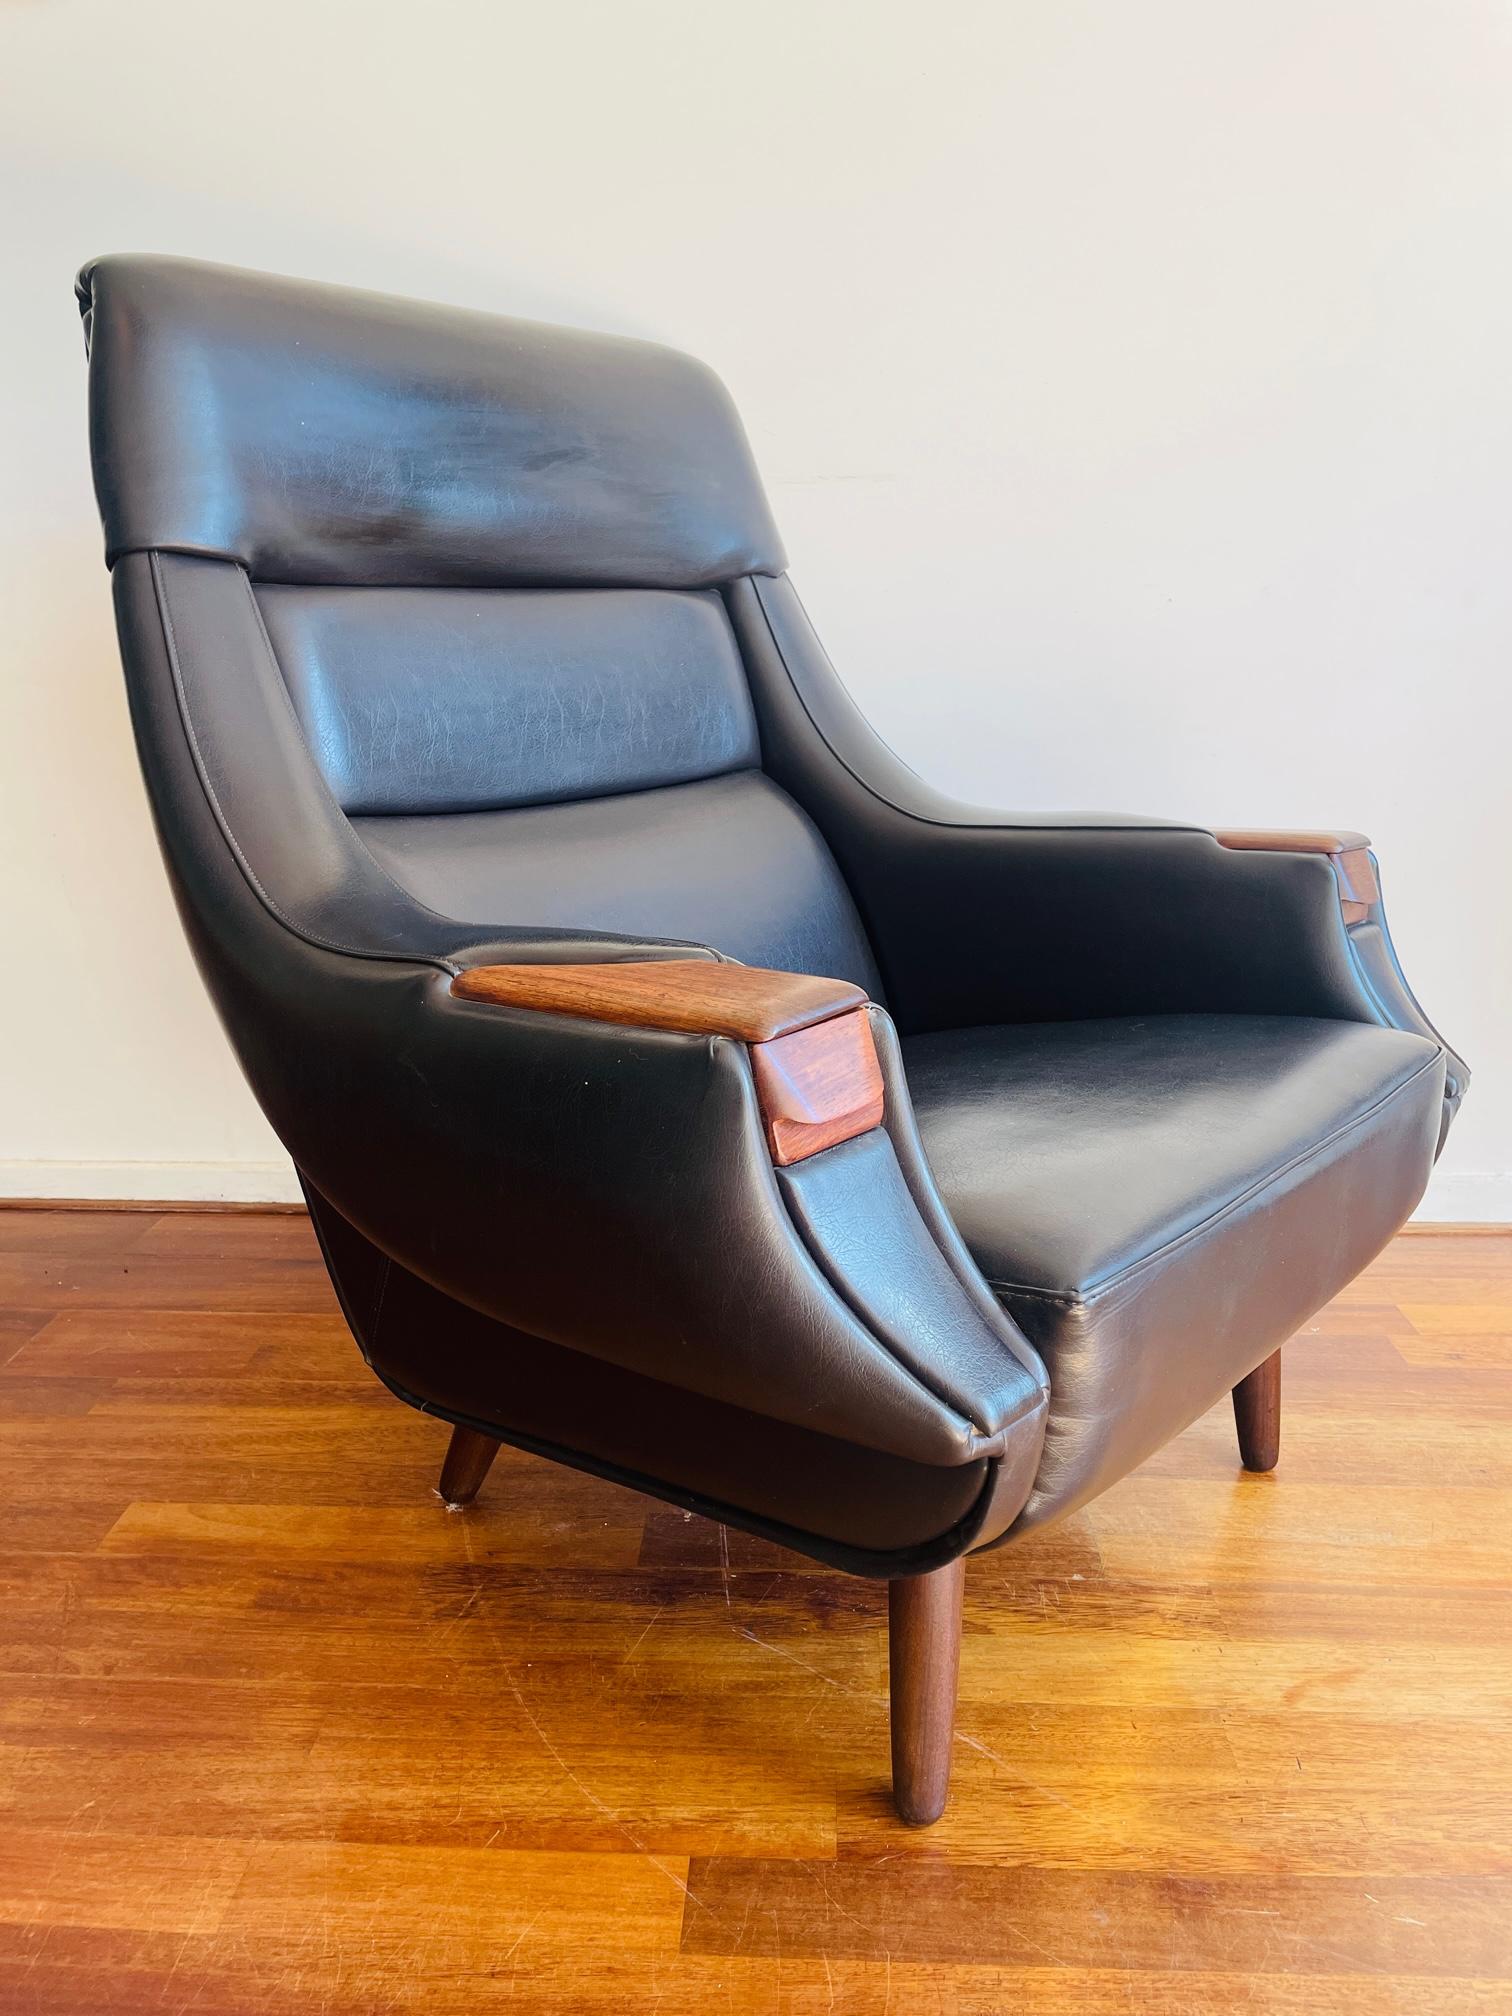 Henry Walter Klein pour HENRY, chaise longue, cuir noir, bois, Danemark, années 1960.

Chaise longue robuste et confortable du designer danois H.W. Klein. La forme légèrement incurvée du dossier est très accueillante. La chaise a des pieds effilés